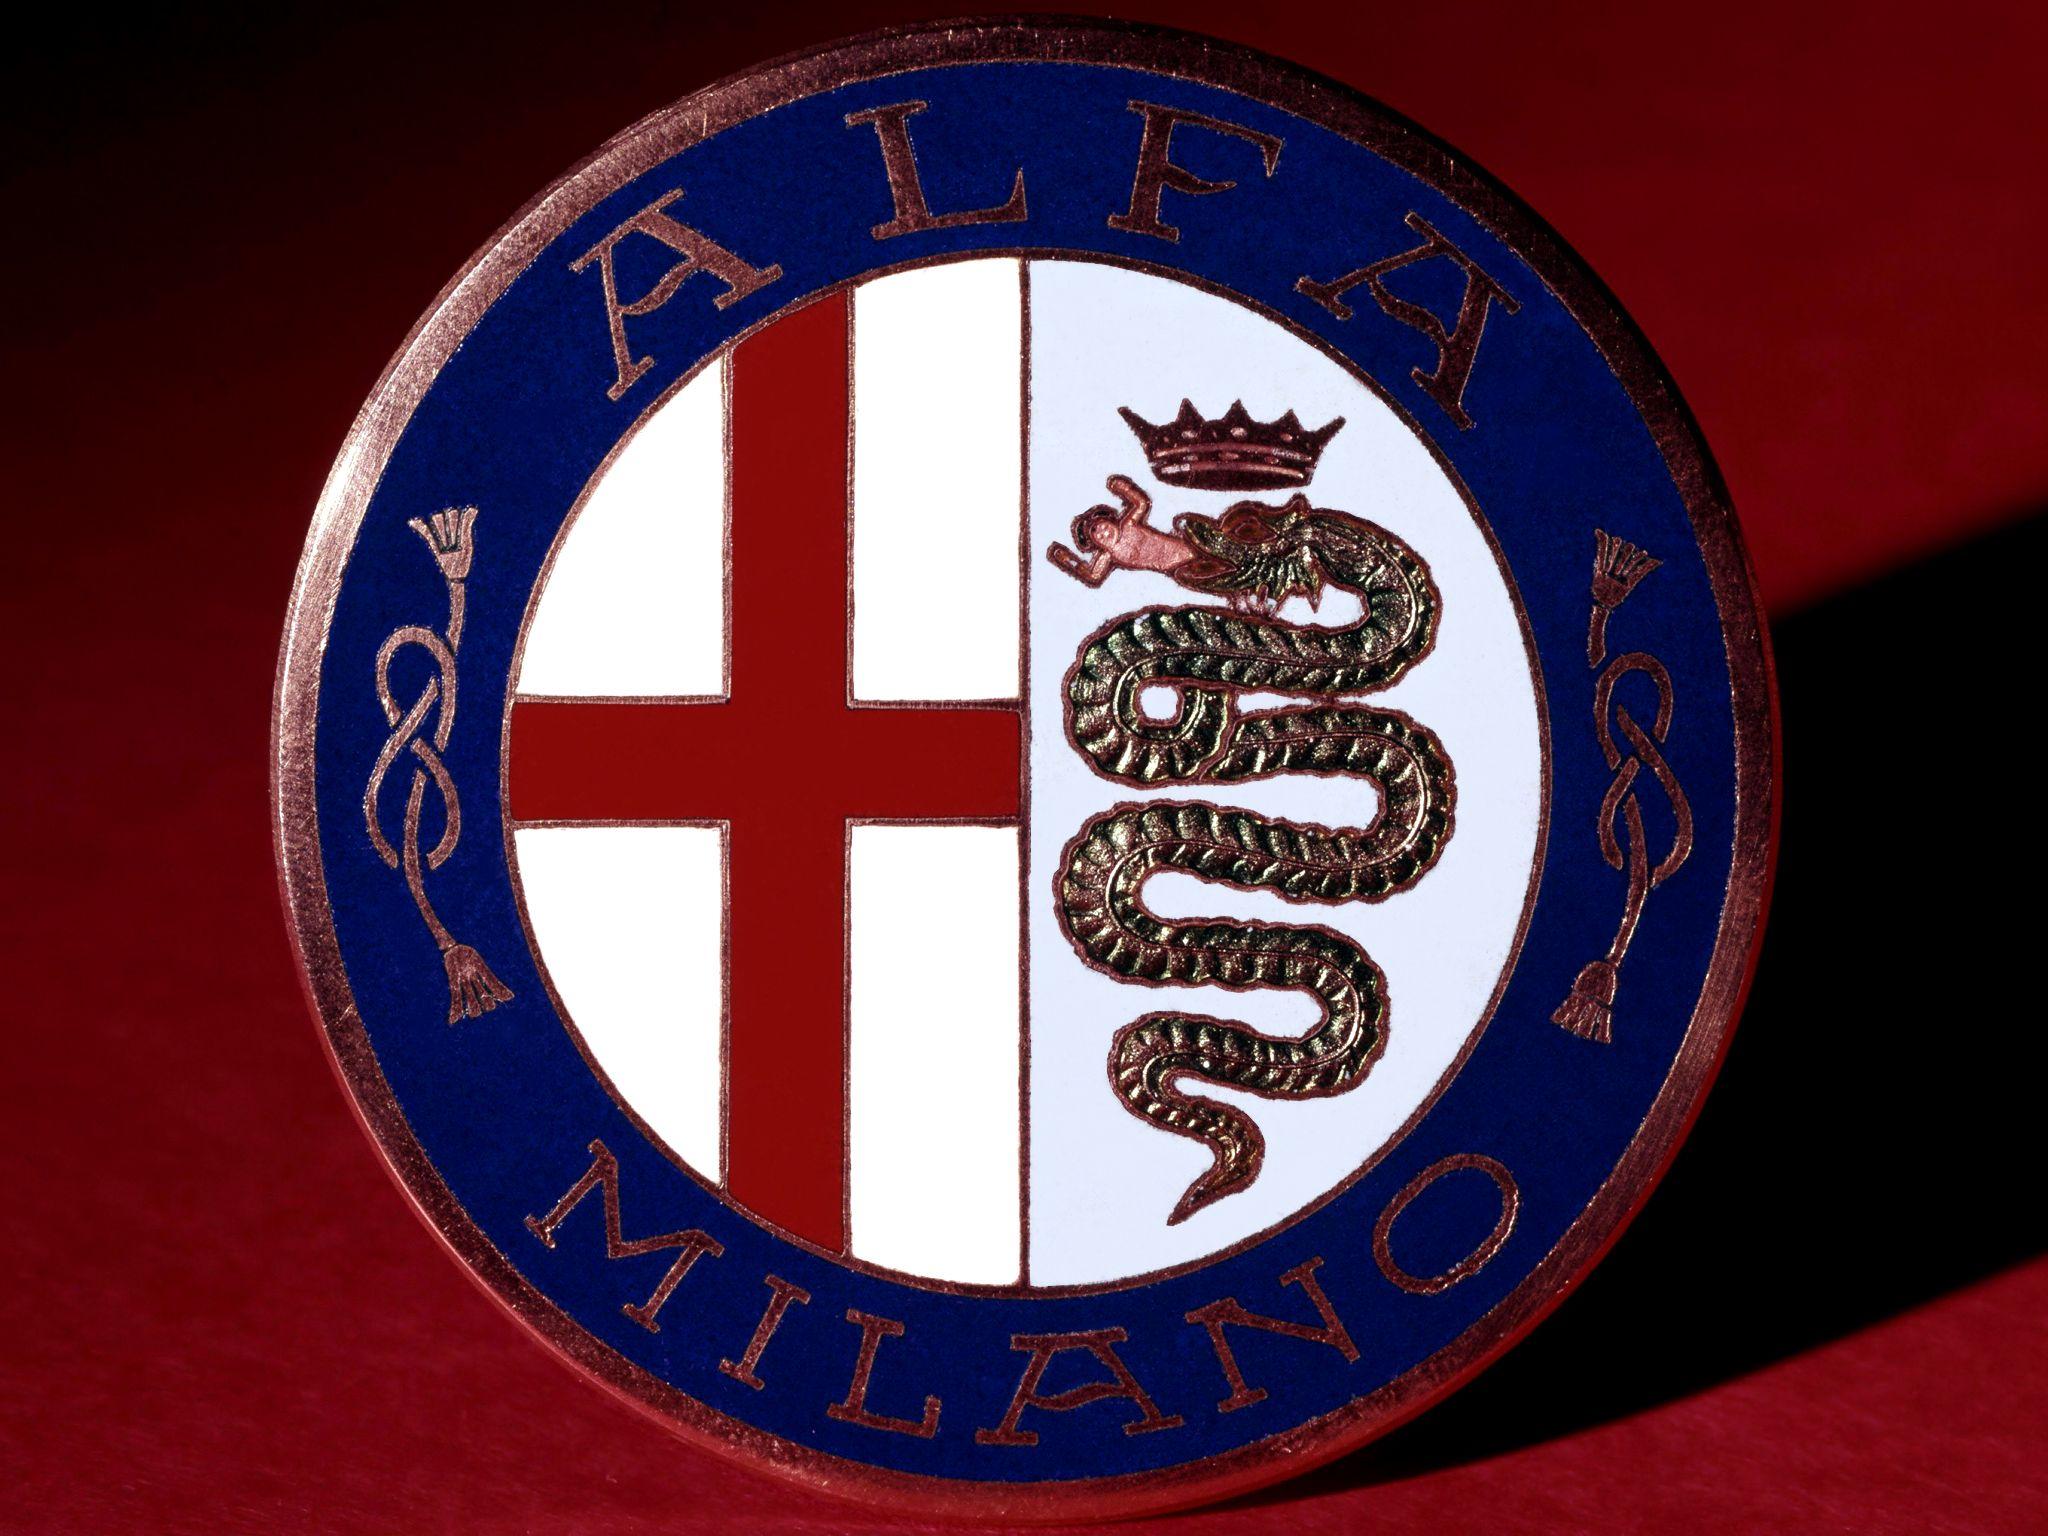 Red Cross Blue Logo - Alfa Romeo Logo, Alfa Romeo Car Symbol Meaning | Car Brand Names.com